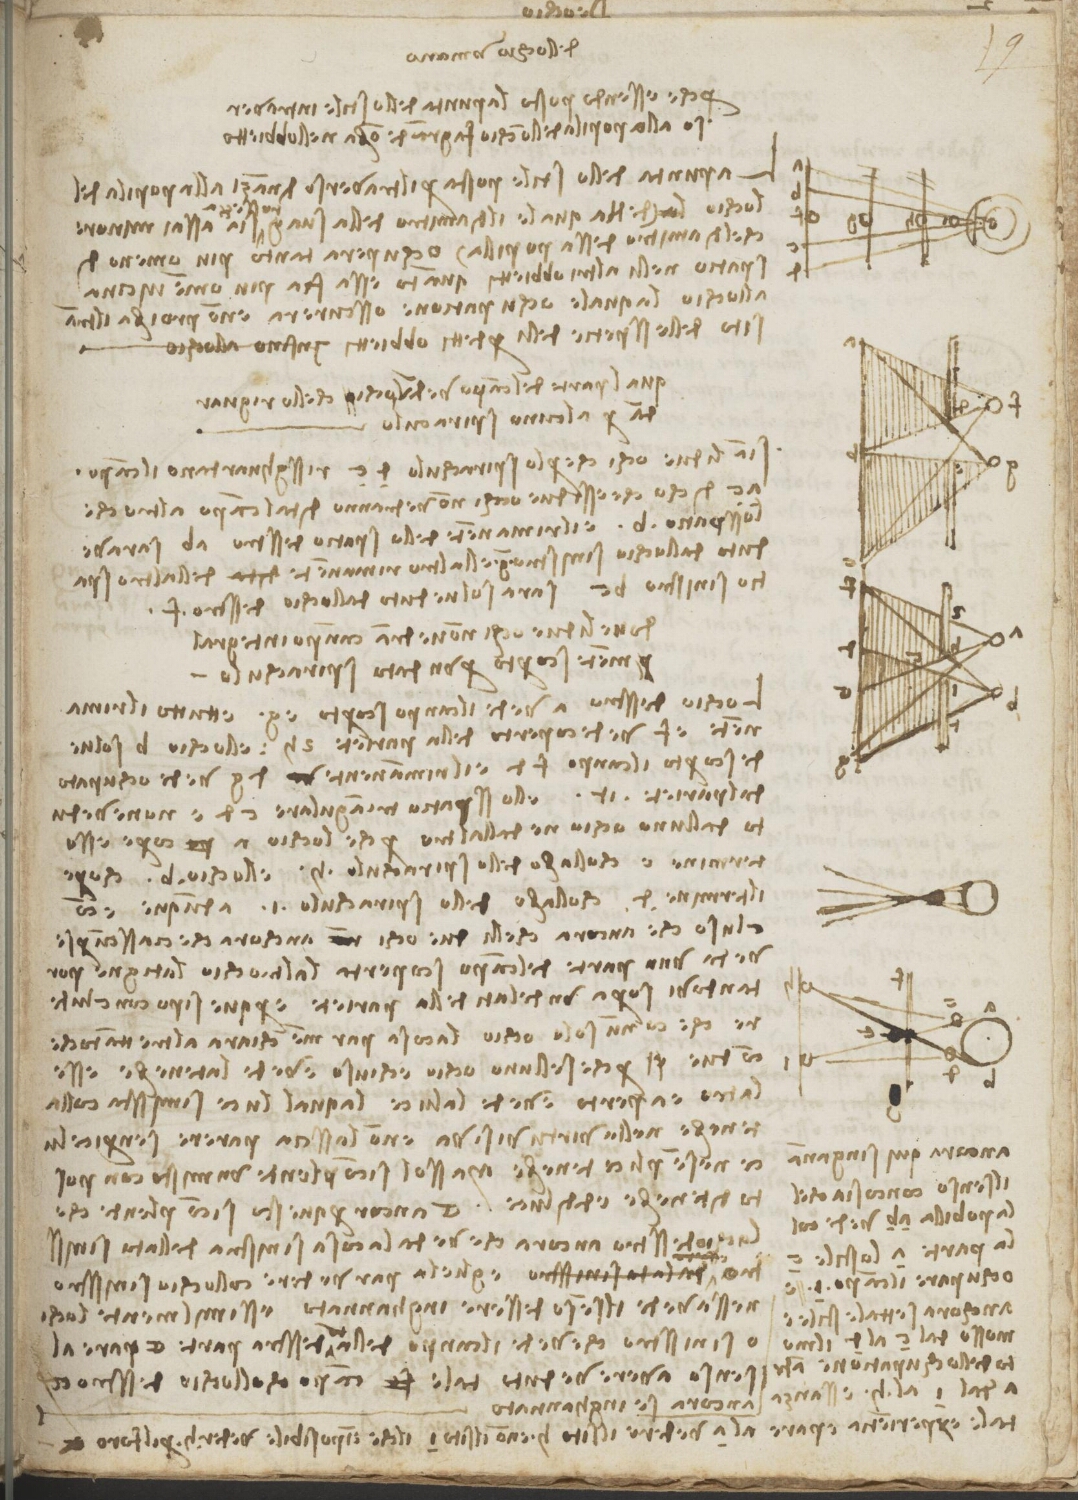 Ms 2175 (manuscrit D), f. 9r : études sur la vision et la façon dont l'oeil perçoit les images.